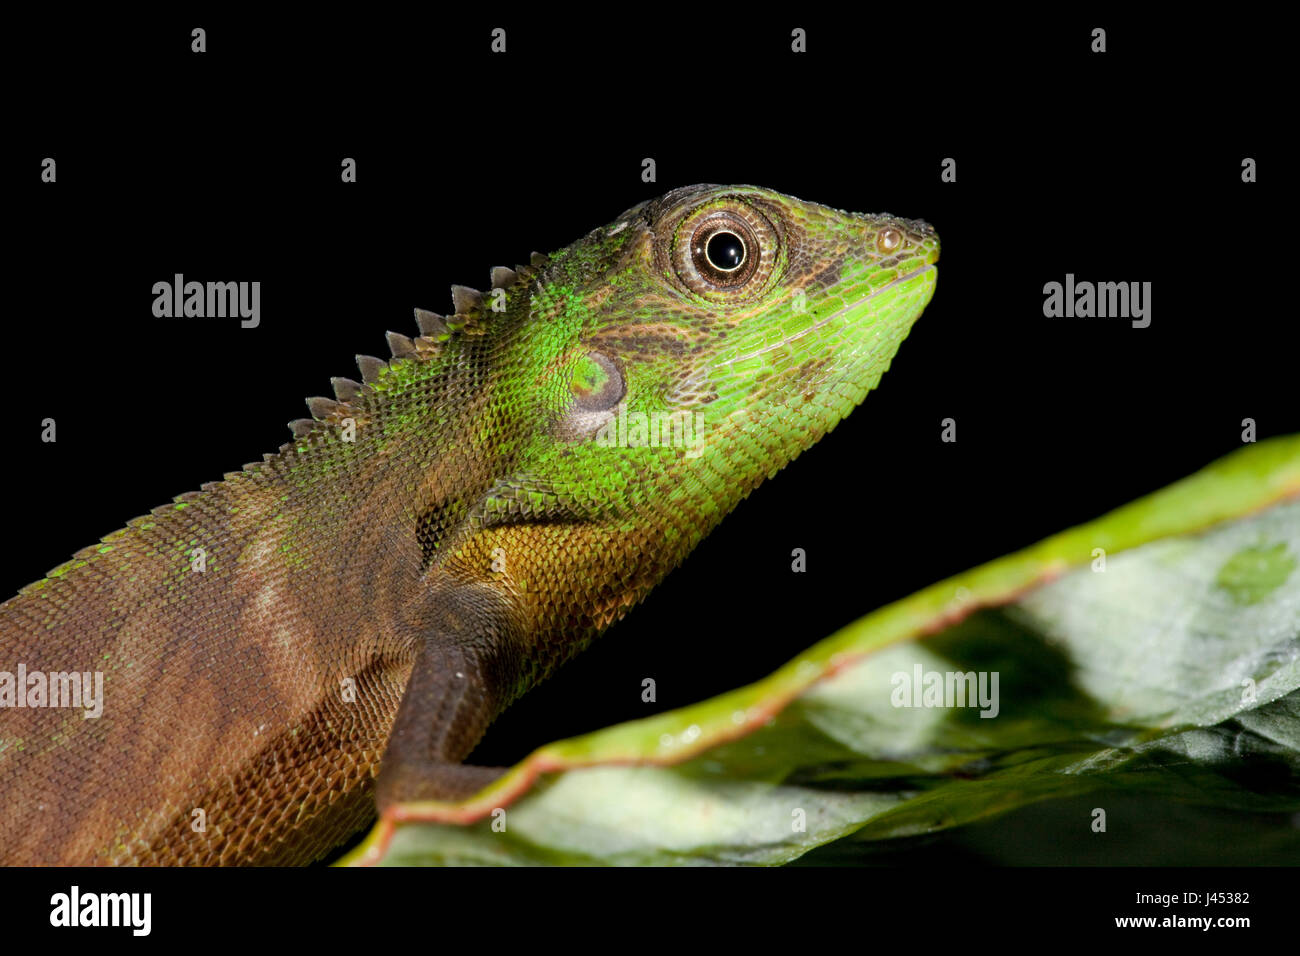 Foto de un arbusto lizard Foto de stock